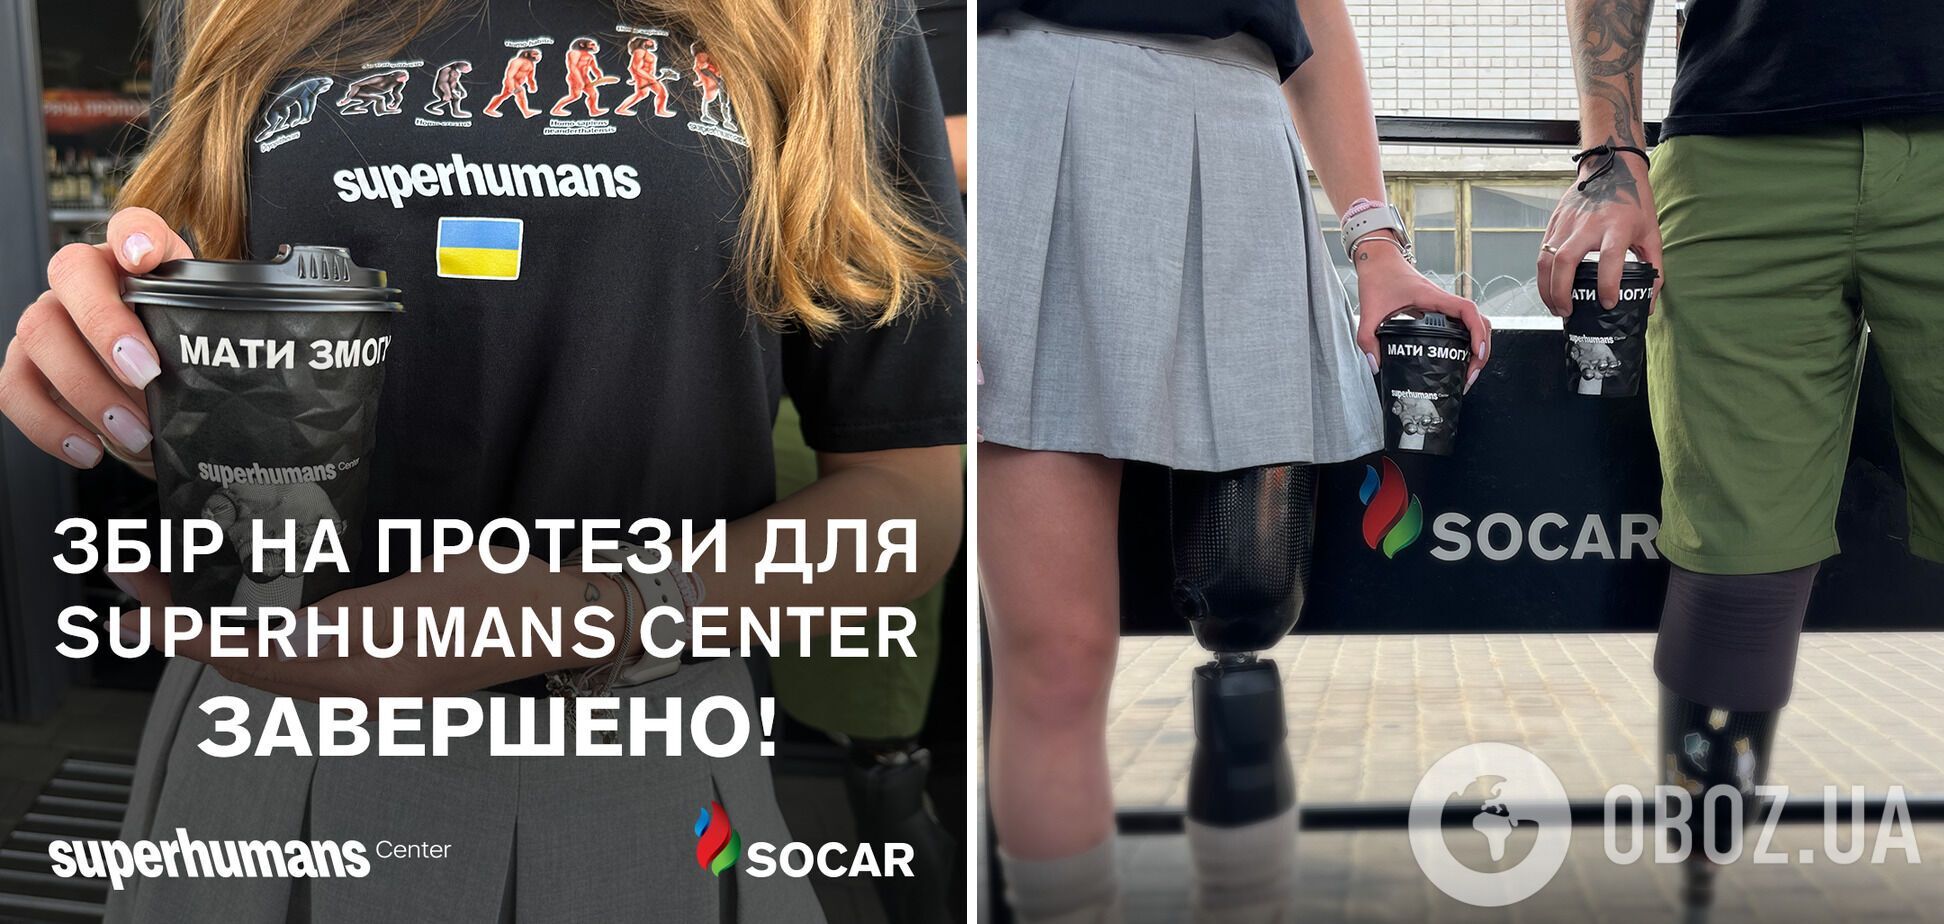 SOCAR: на високофункціональні протези для постраждалих українців зібрано 1,5 млн грн